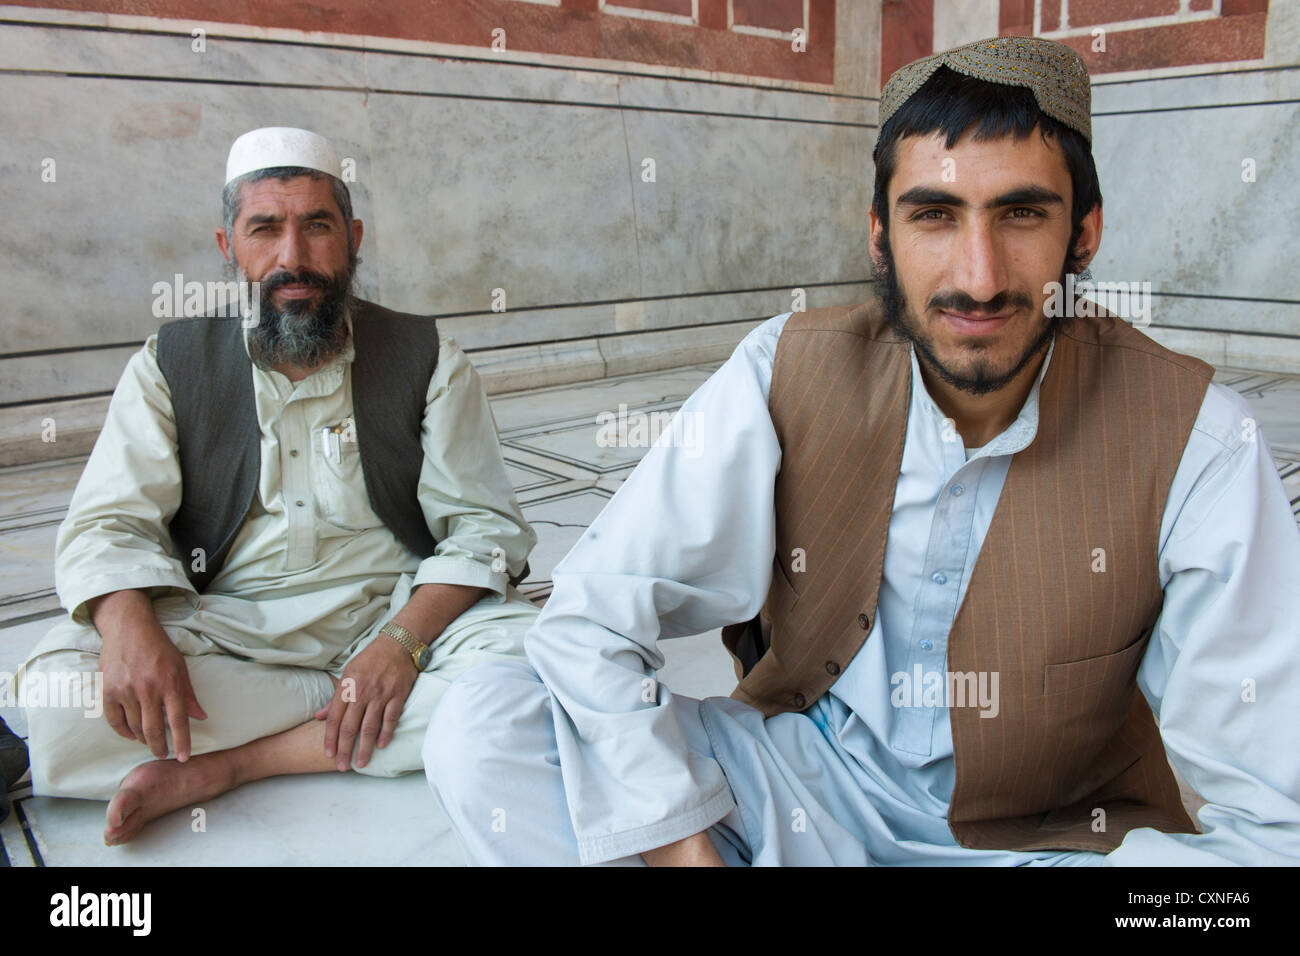 Les Afghans Kandahar dans le Jama Masjid, la principale mosquée de la vieille ville de Delhi, Inde Banque D'Images